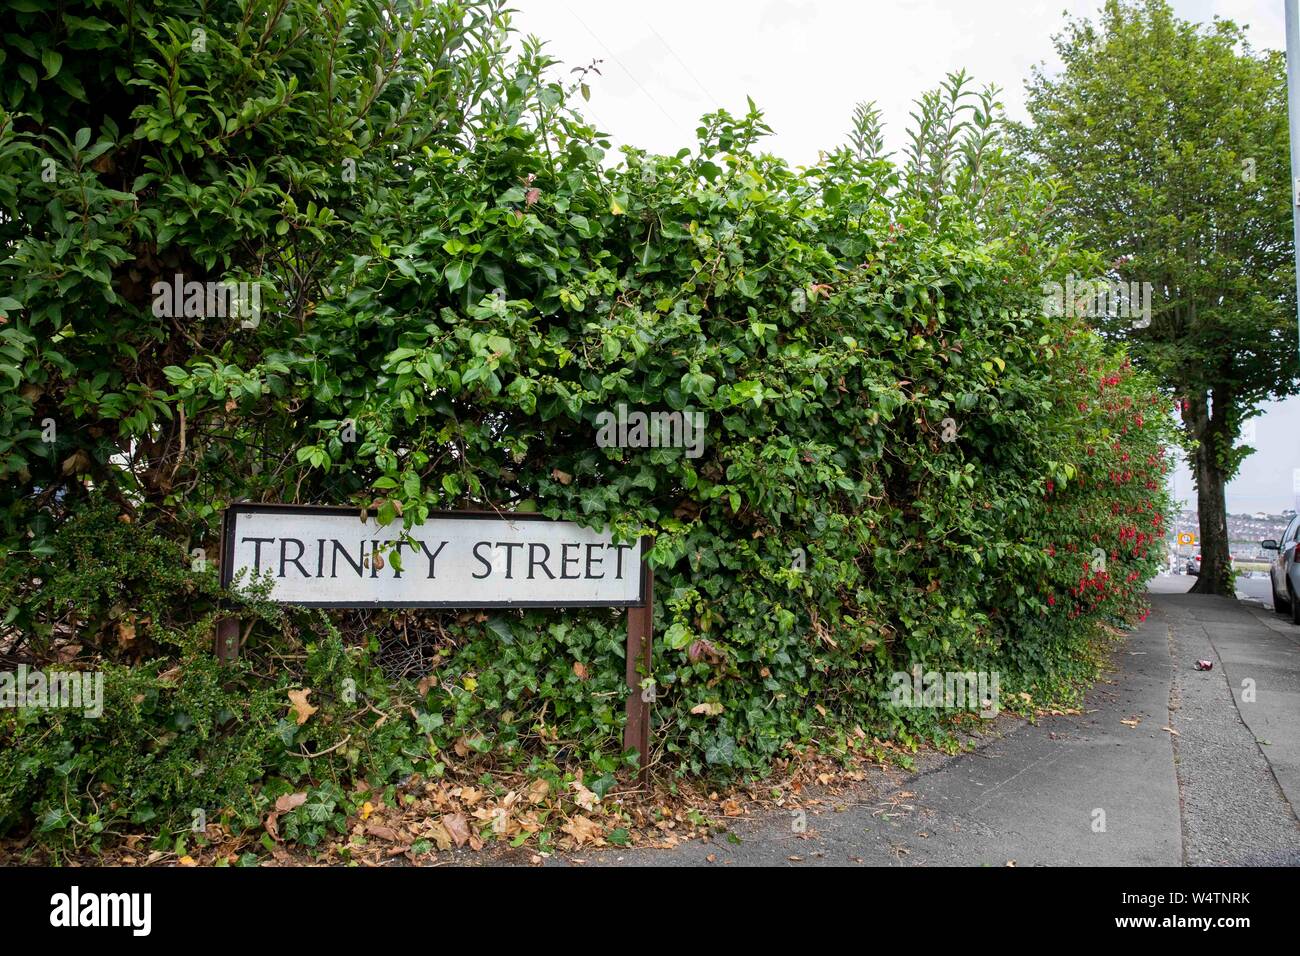 La signalisation routière pour Trinity Street, à Barry, où BBC sitcom Gavin et Stacey est filmé, juillet 2019. Banque D'Images